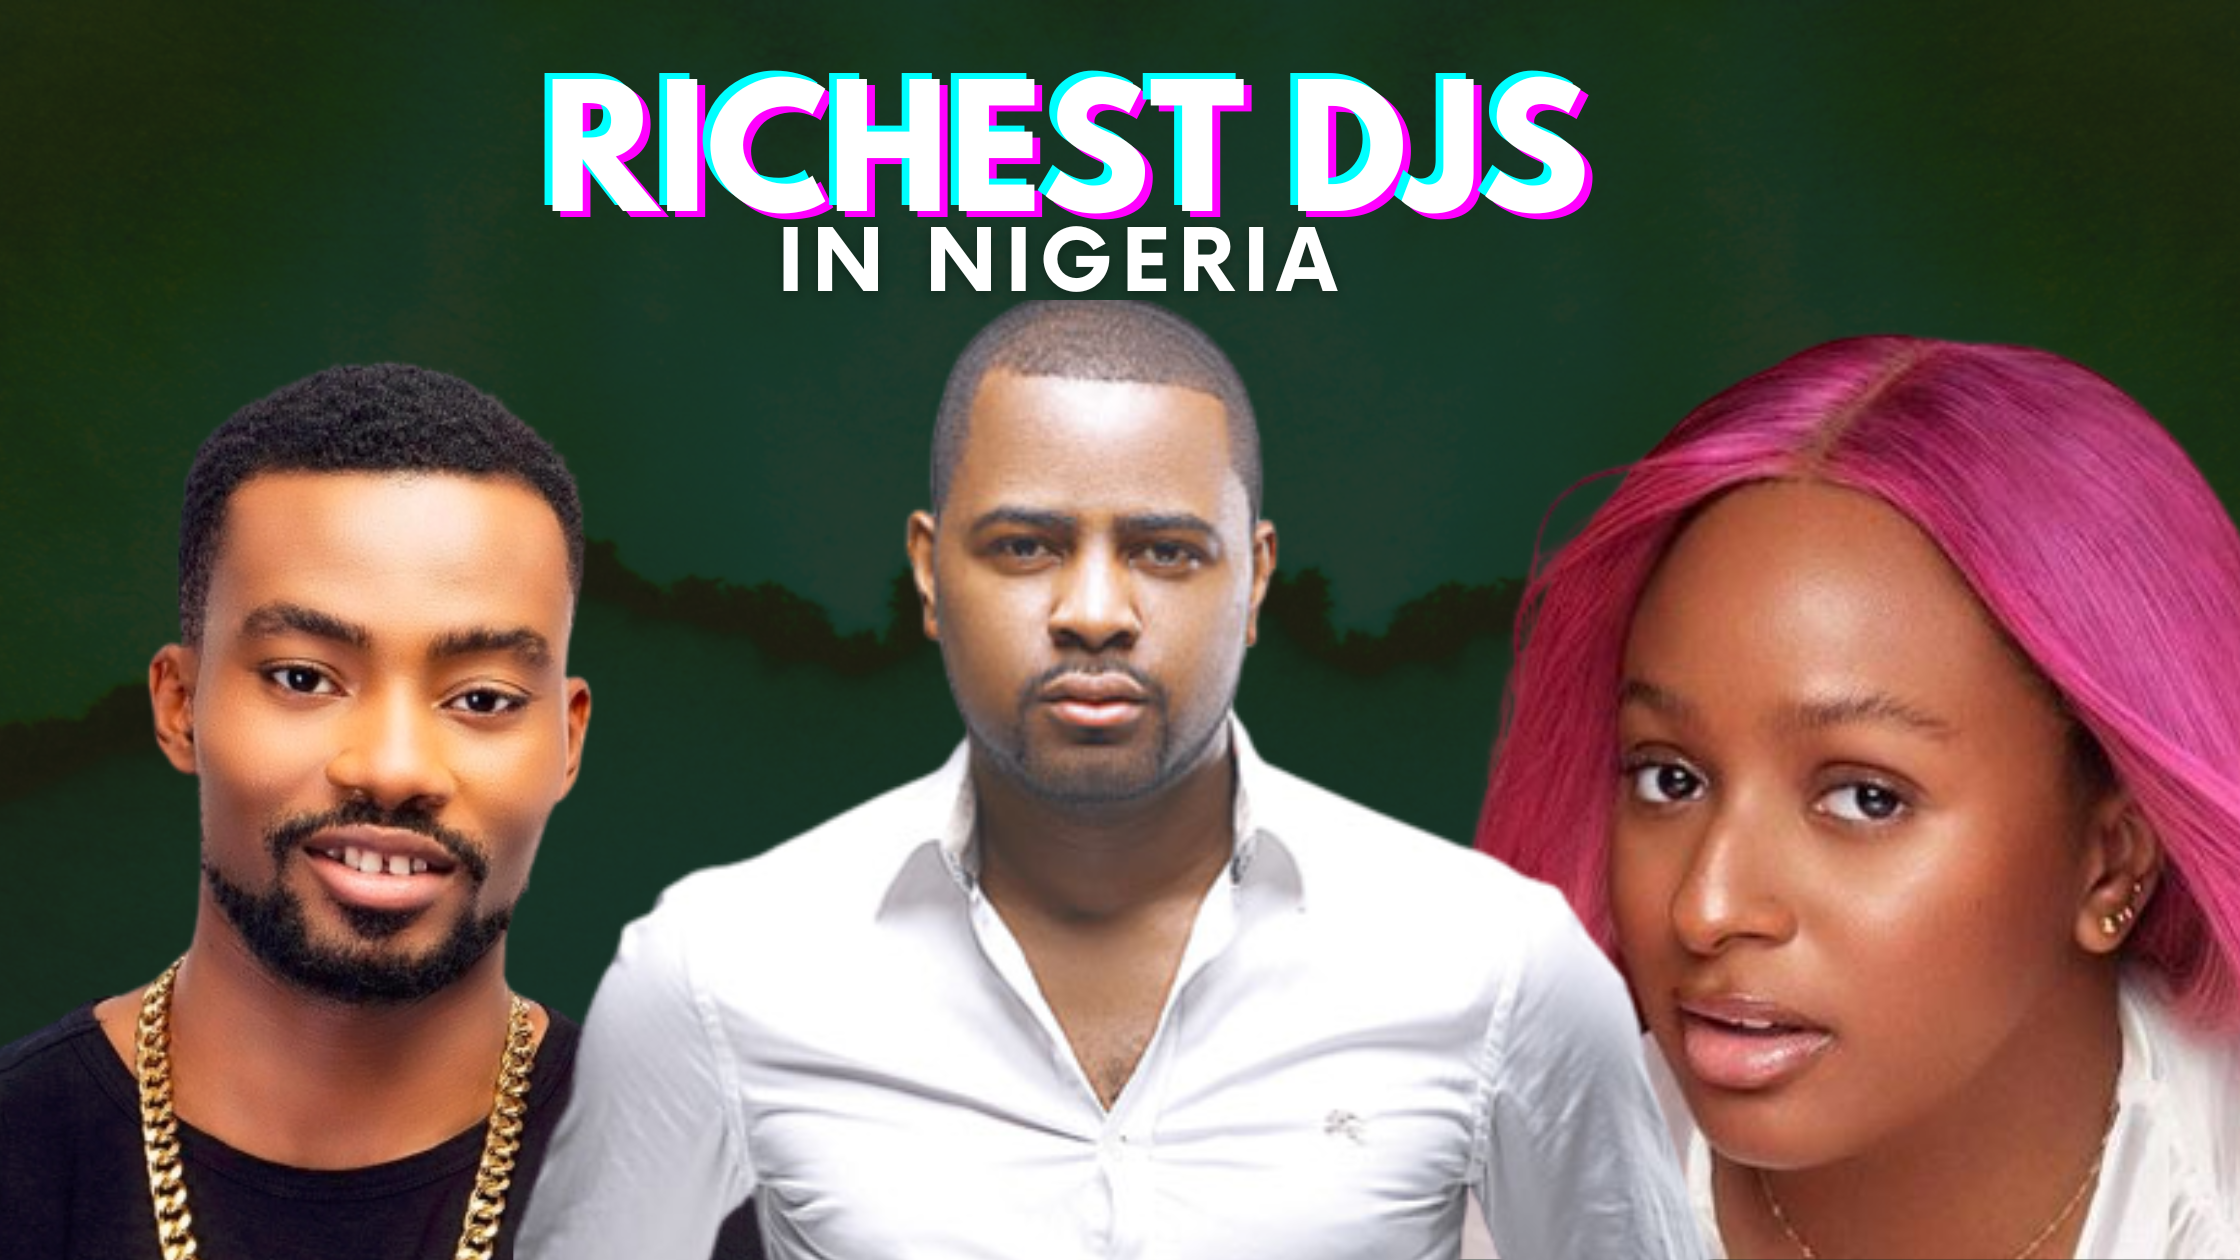 Top 10 Richest DJs In Nigeria